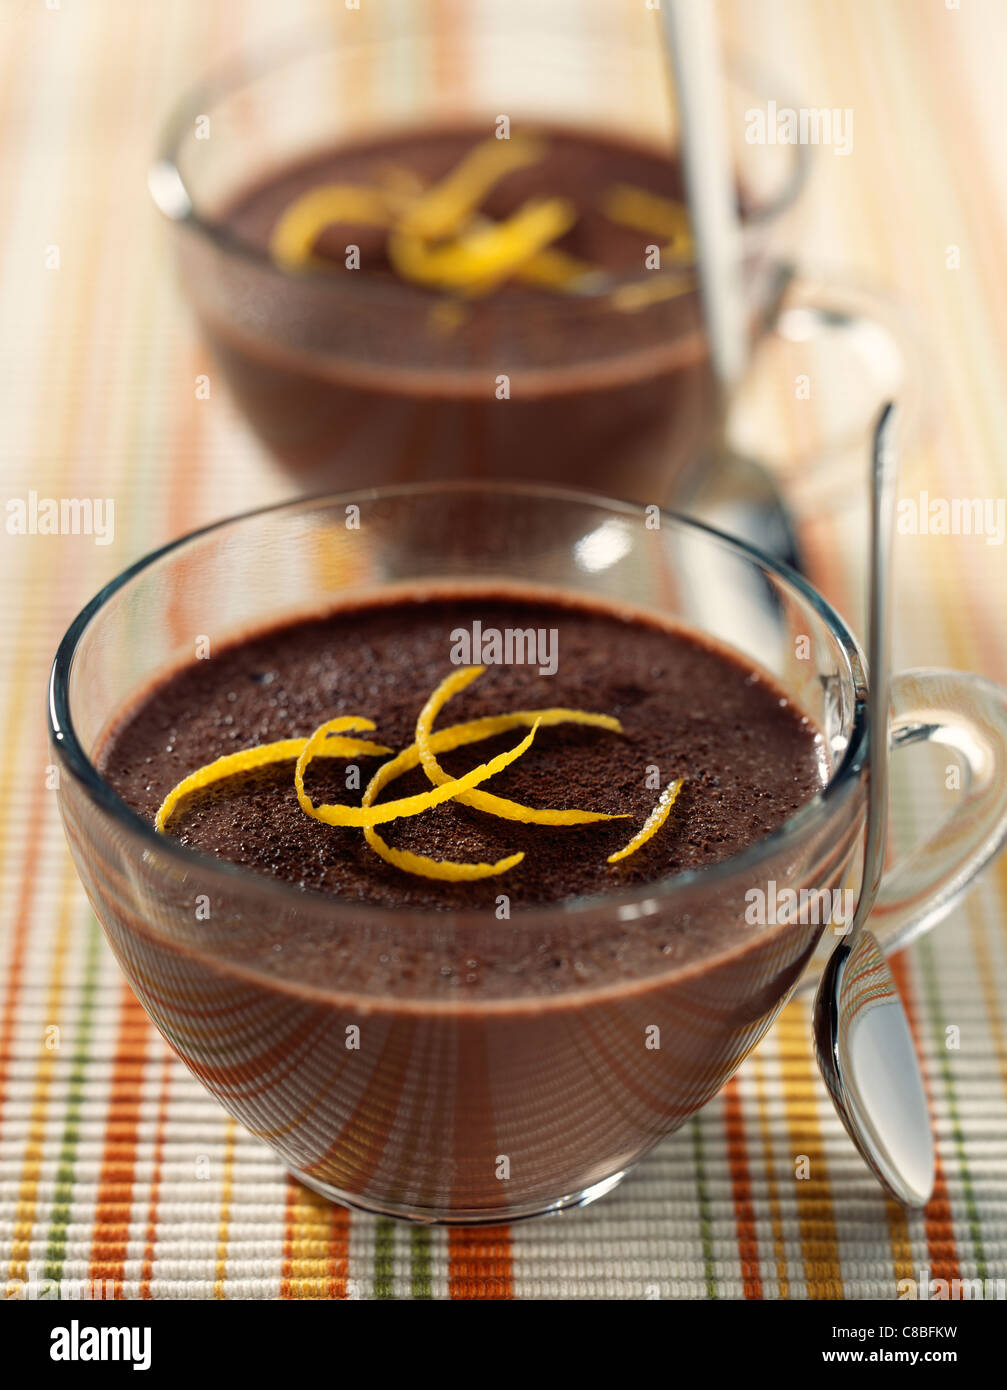 chocolate cream with orange zest Stock Photo